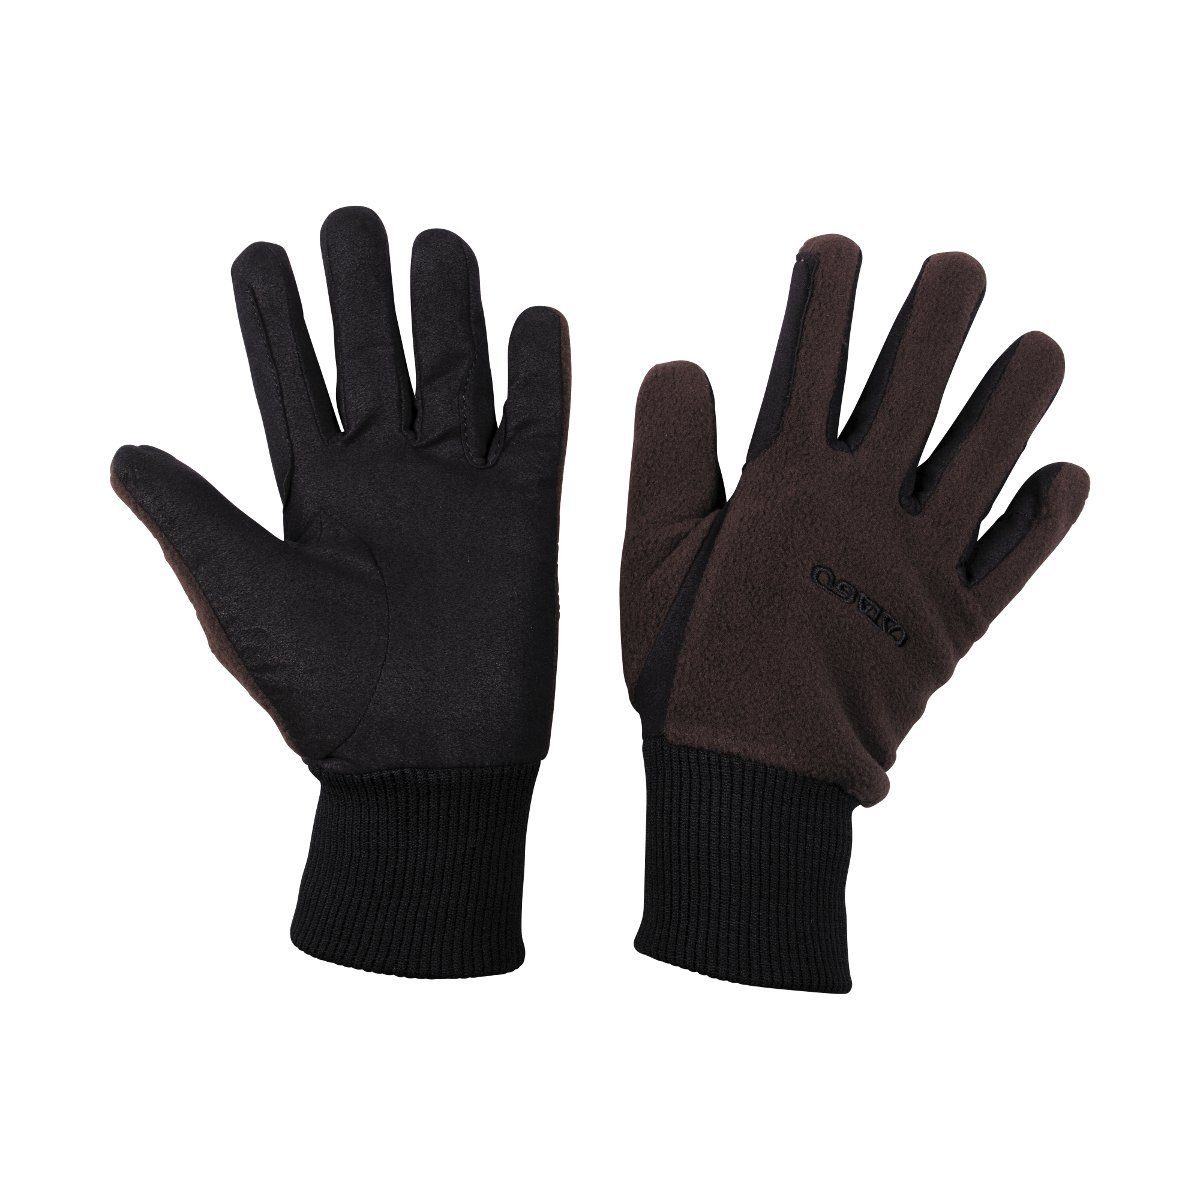 CATAGO Reithandschuhe aus Handschuhe - Fleece braun